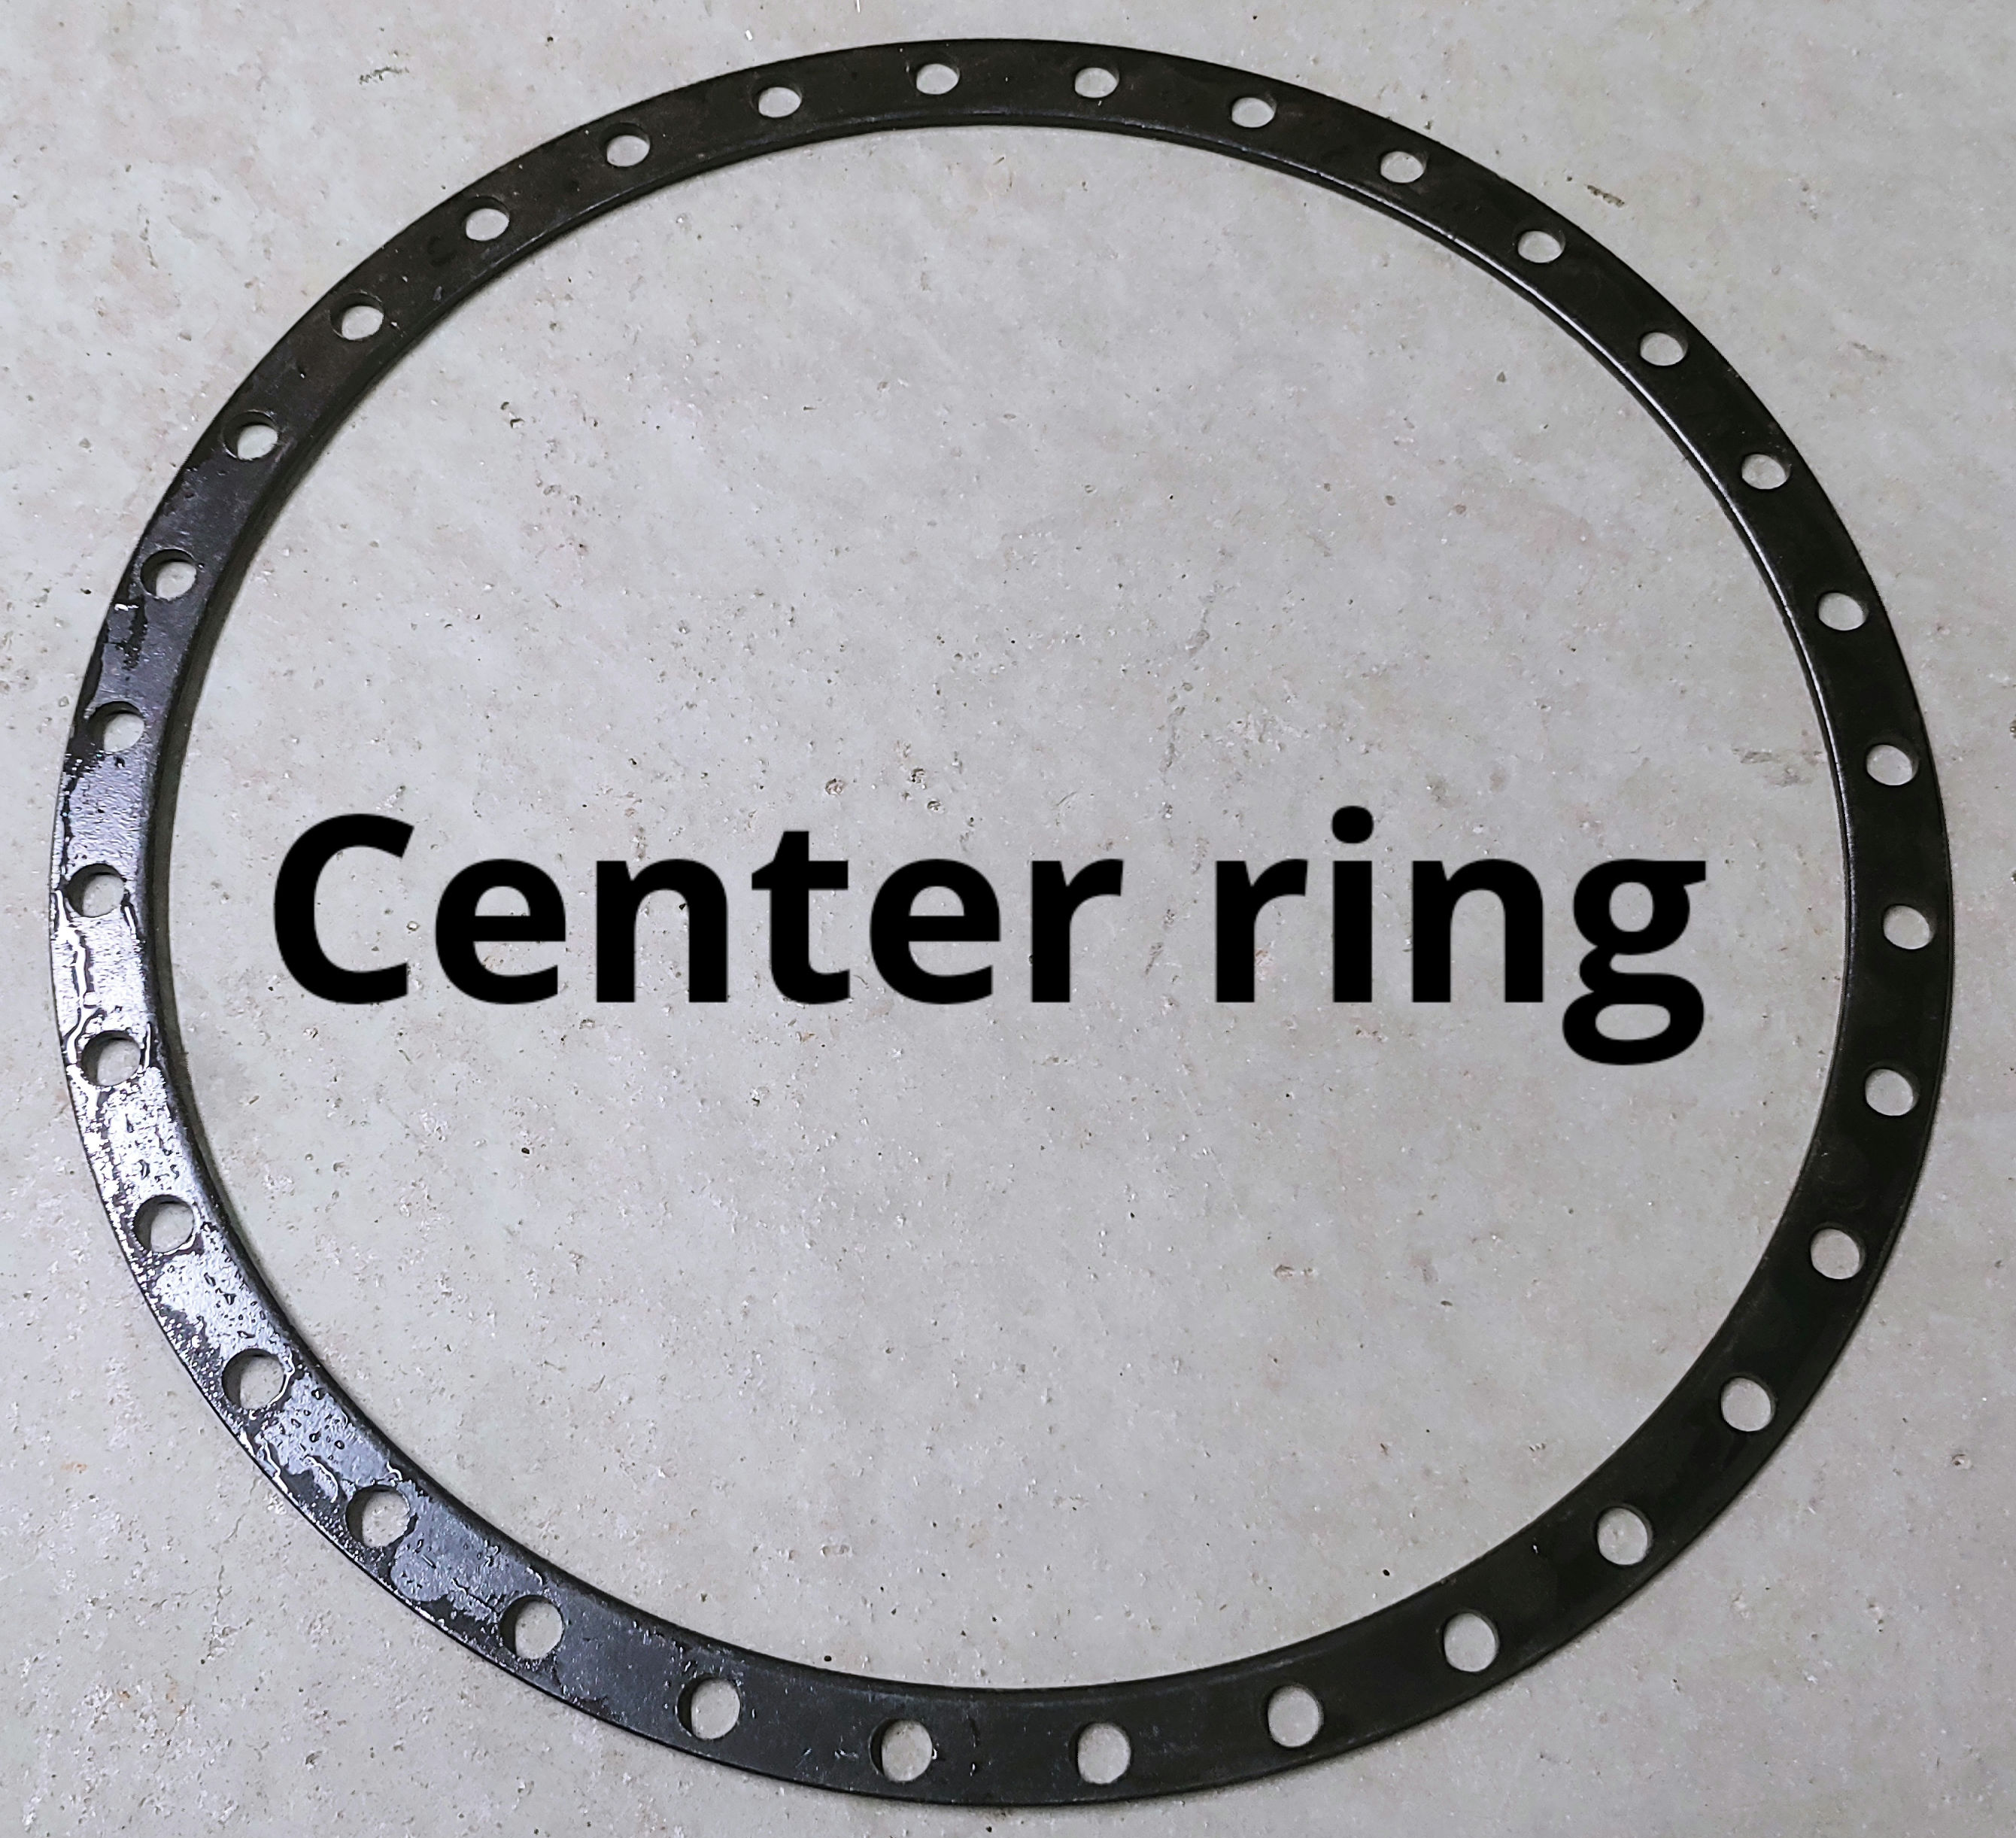 Center ring.jpg